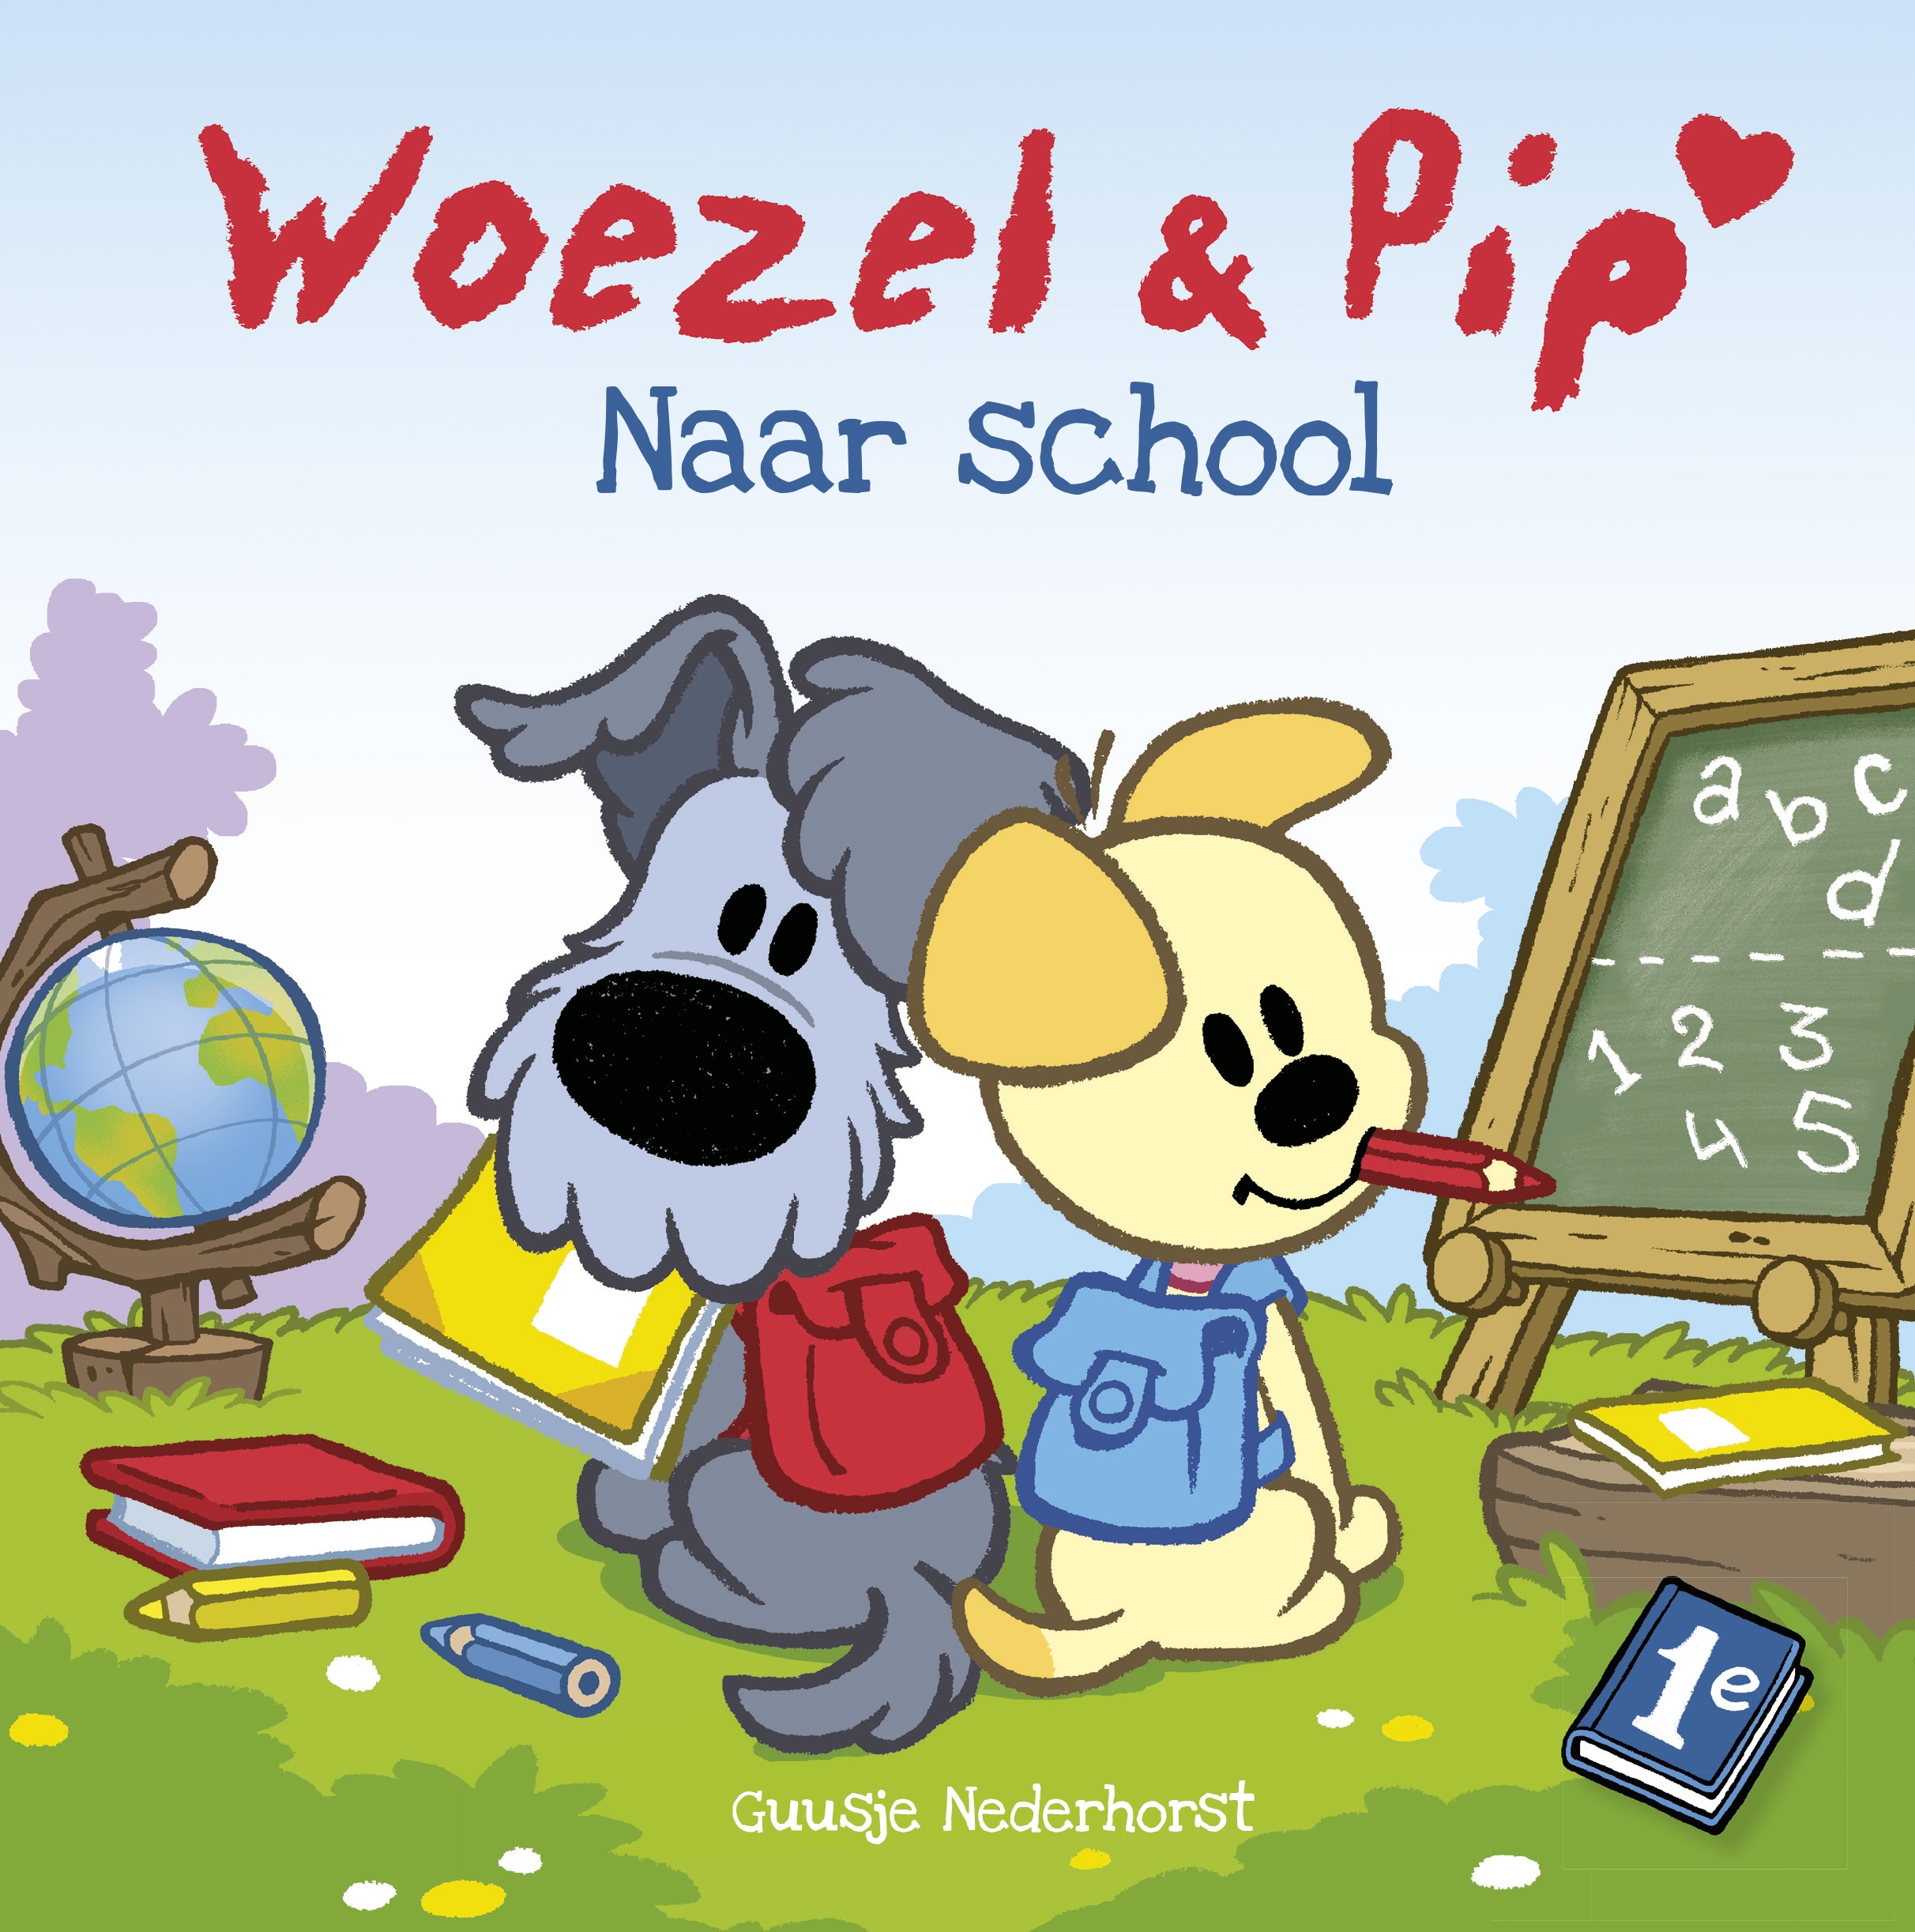 Je bekijkt nu Review: Woezel & Pip naar school